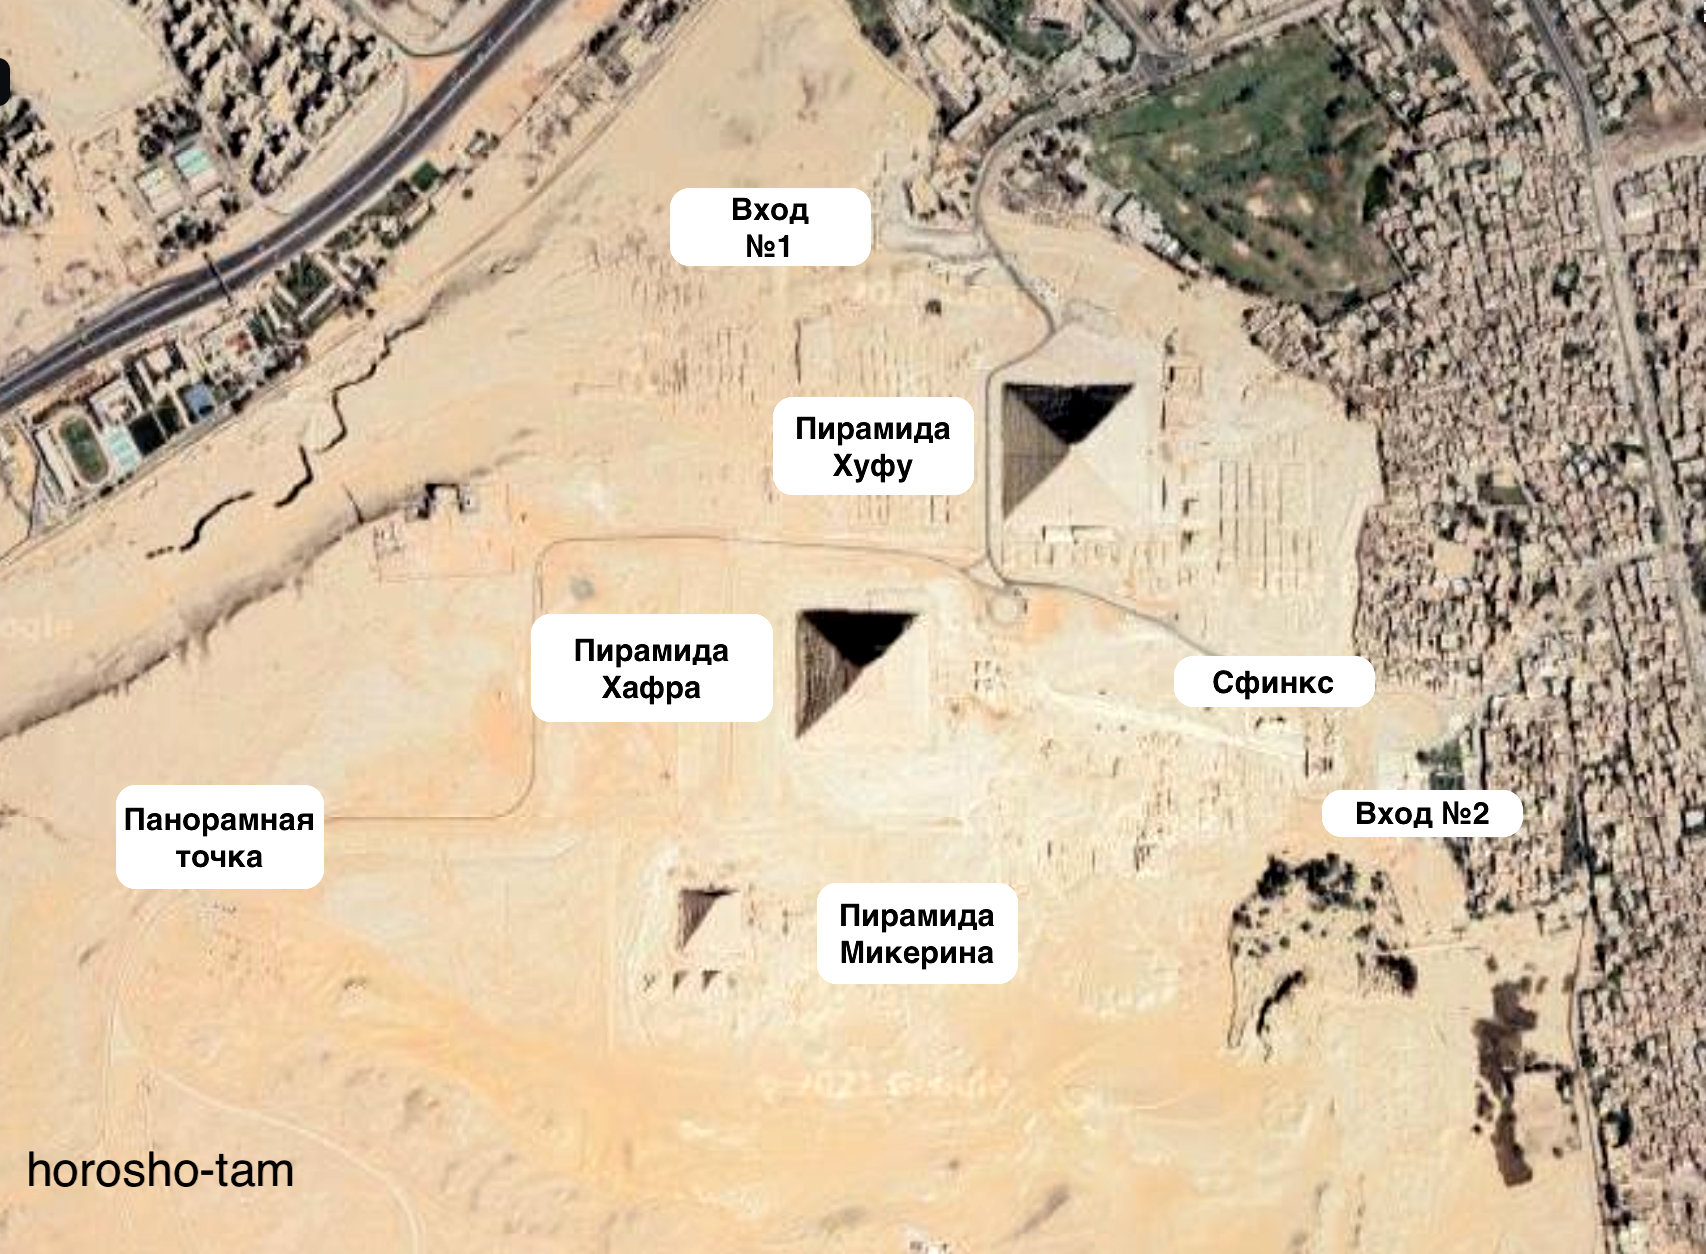 Пирамиды Гизы и Национальный музей Египта из Шарм-эль-Шейха